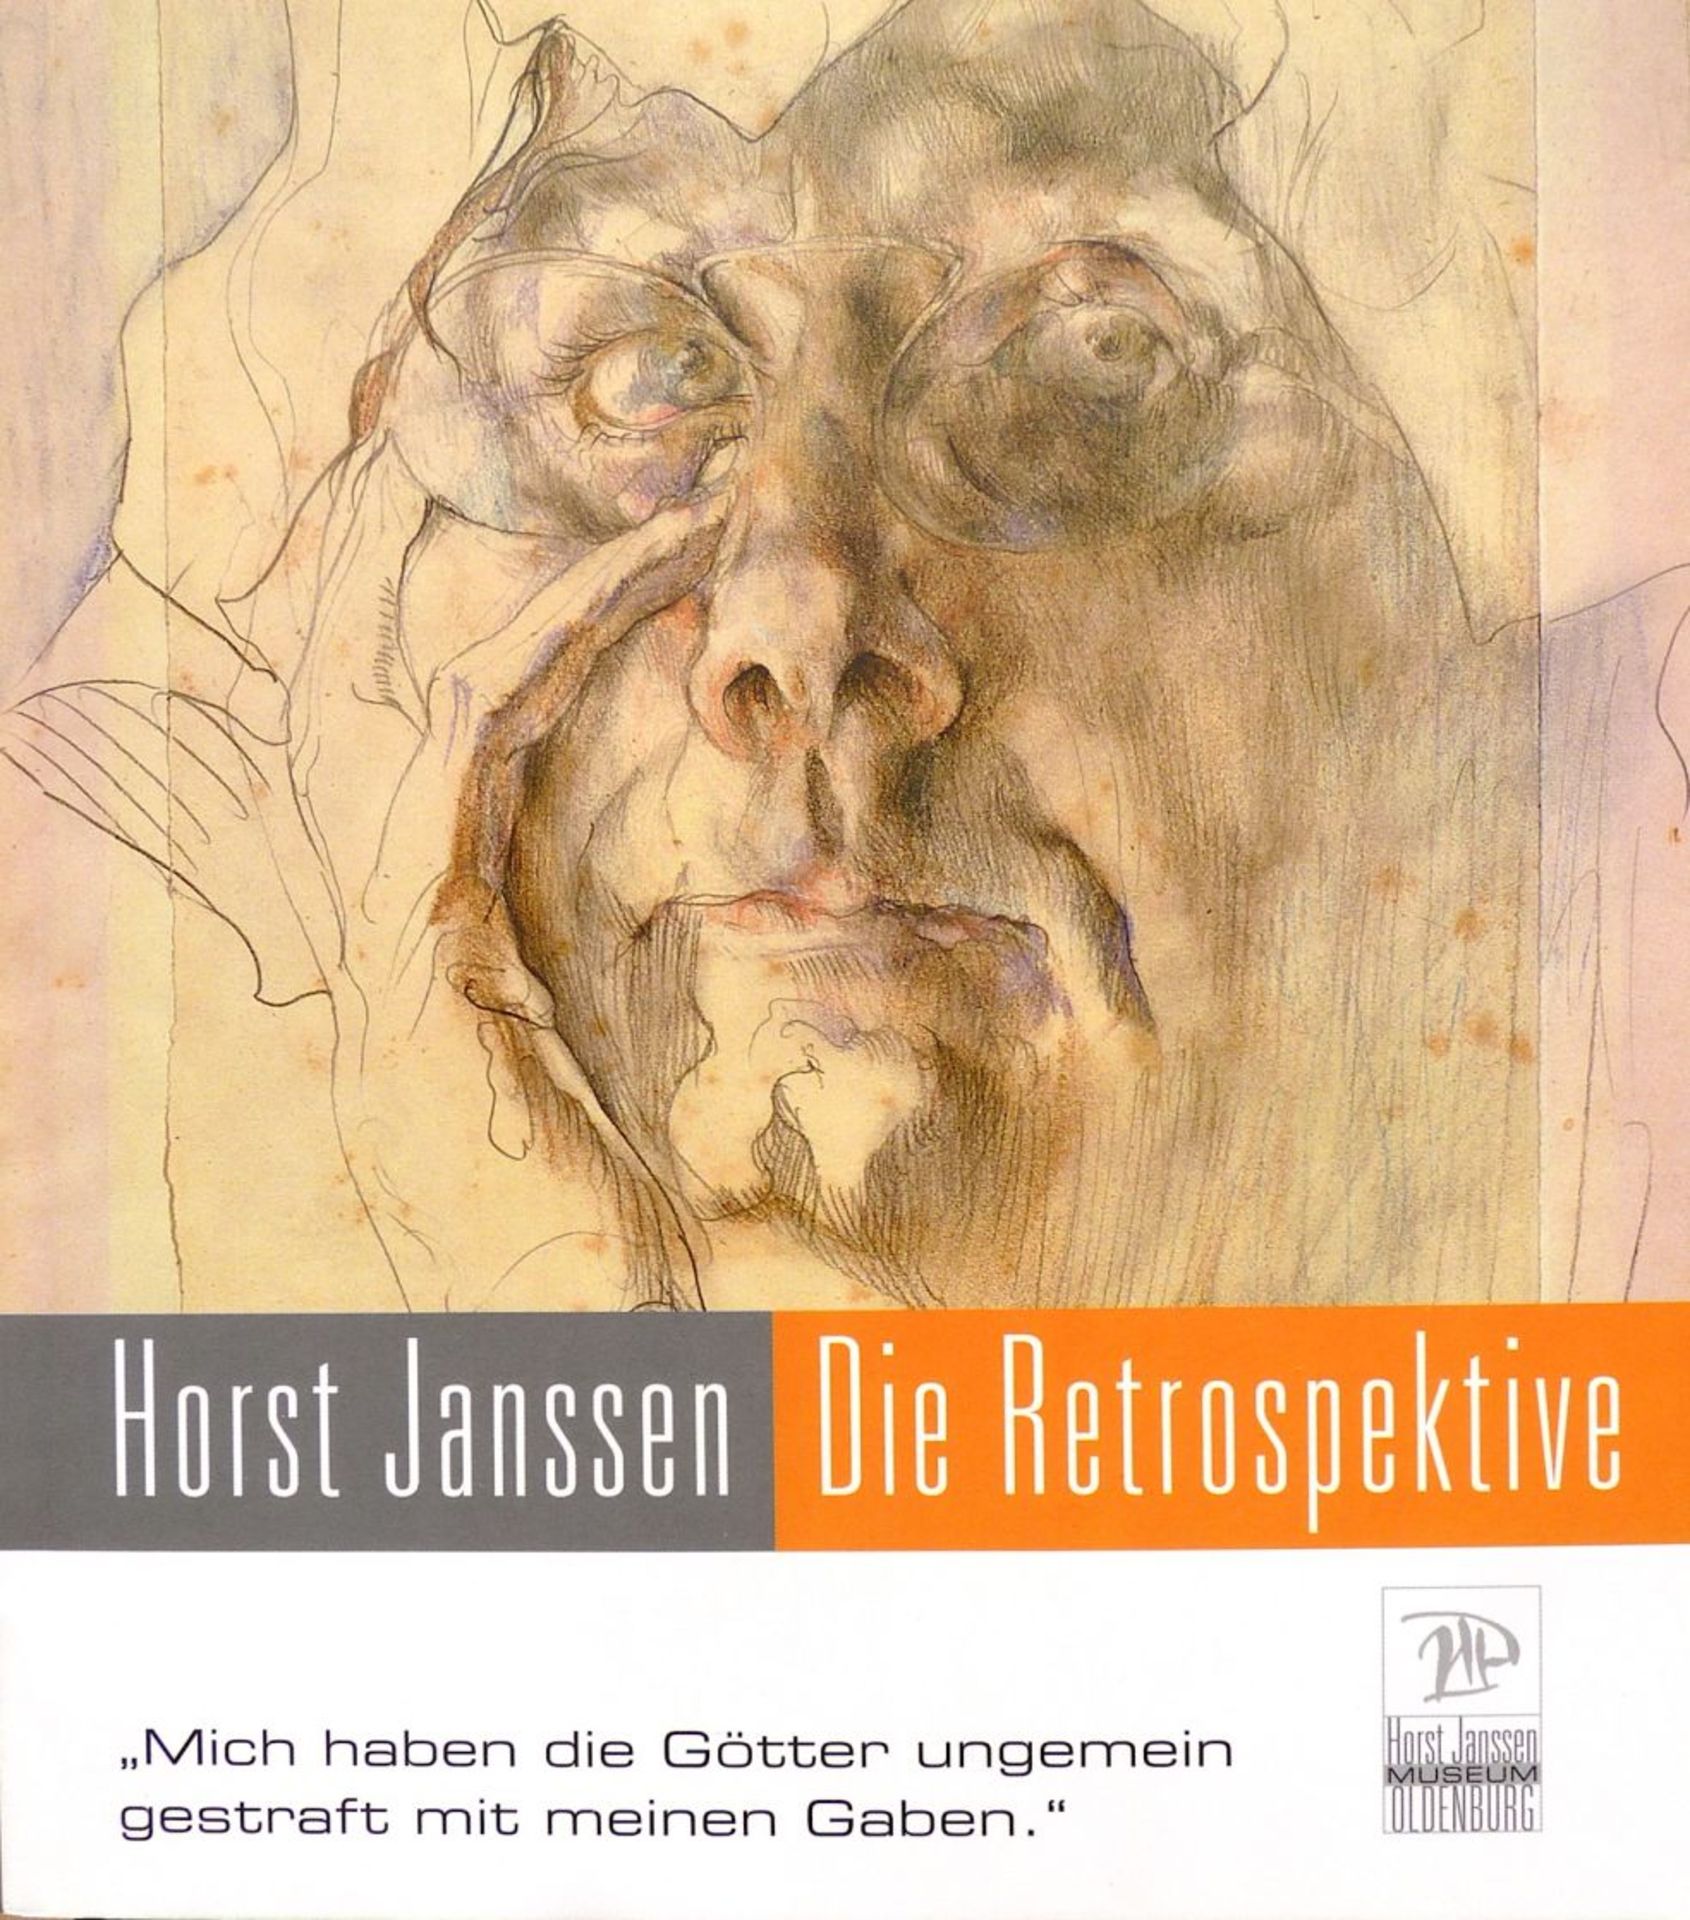 JANSSEN, HORST: "Die Retrospektive", 2009